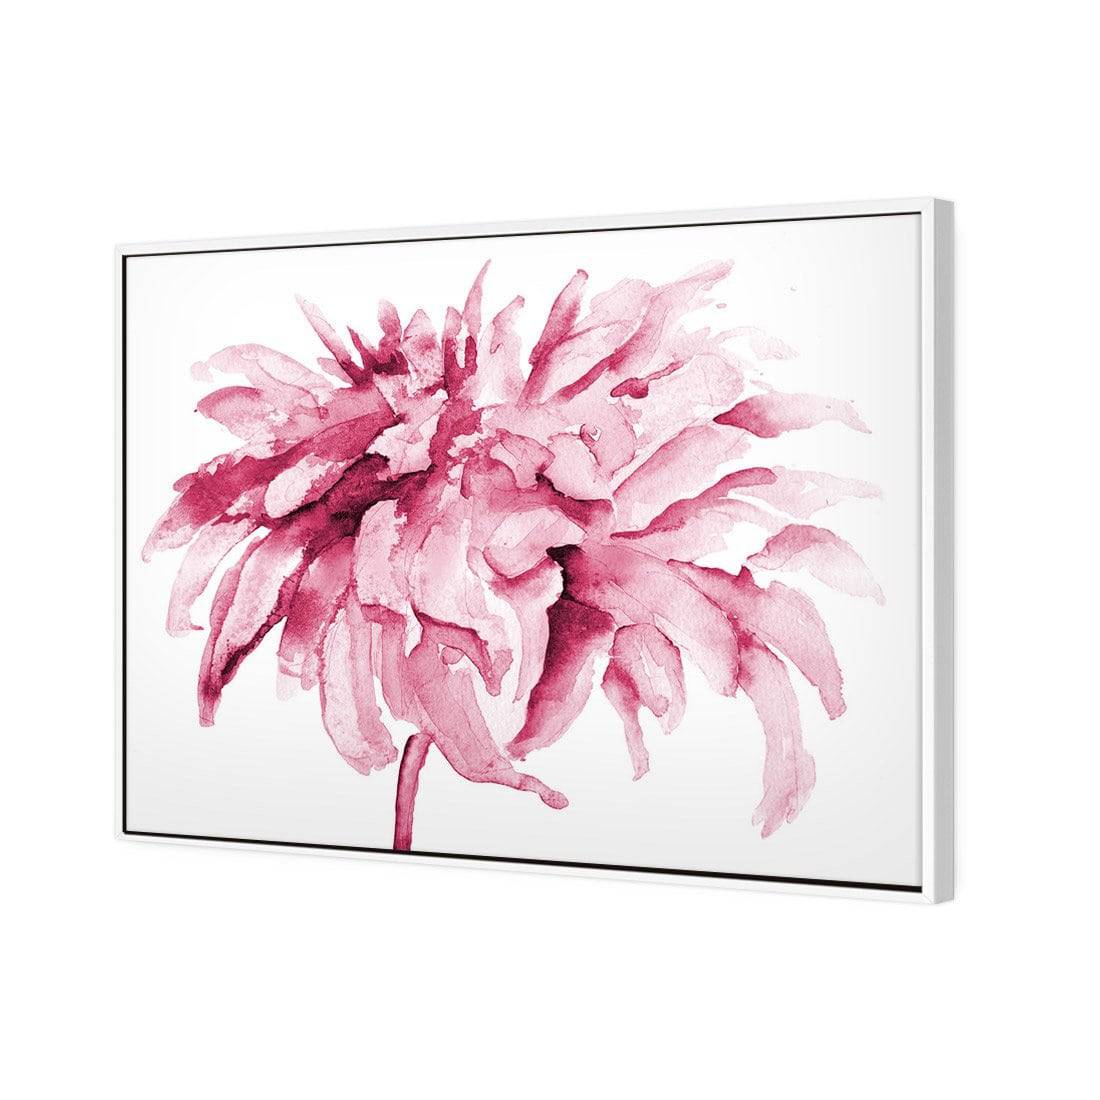 Fairy Floss, Pink Canvas Art-Canvas-Wall Art Designs-59X40cm-Canvas - White Frame-Wall Art Designs